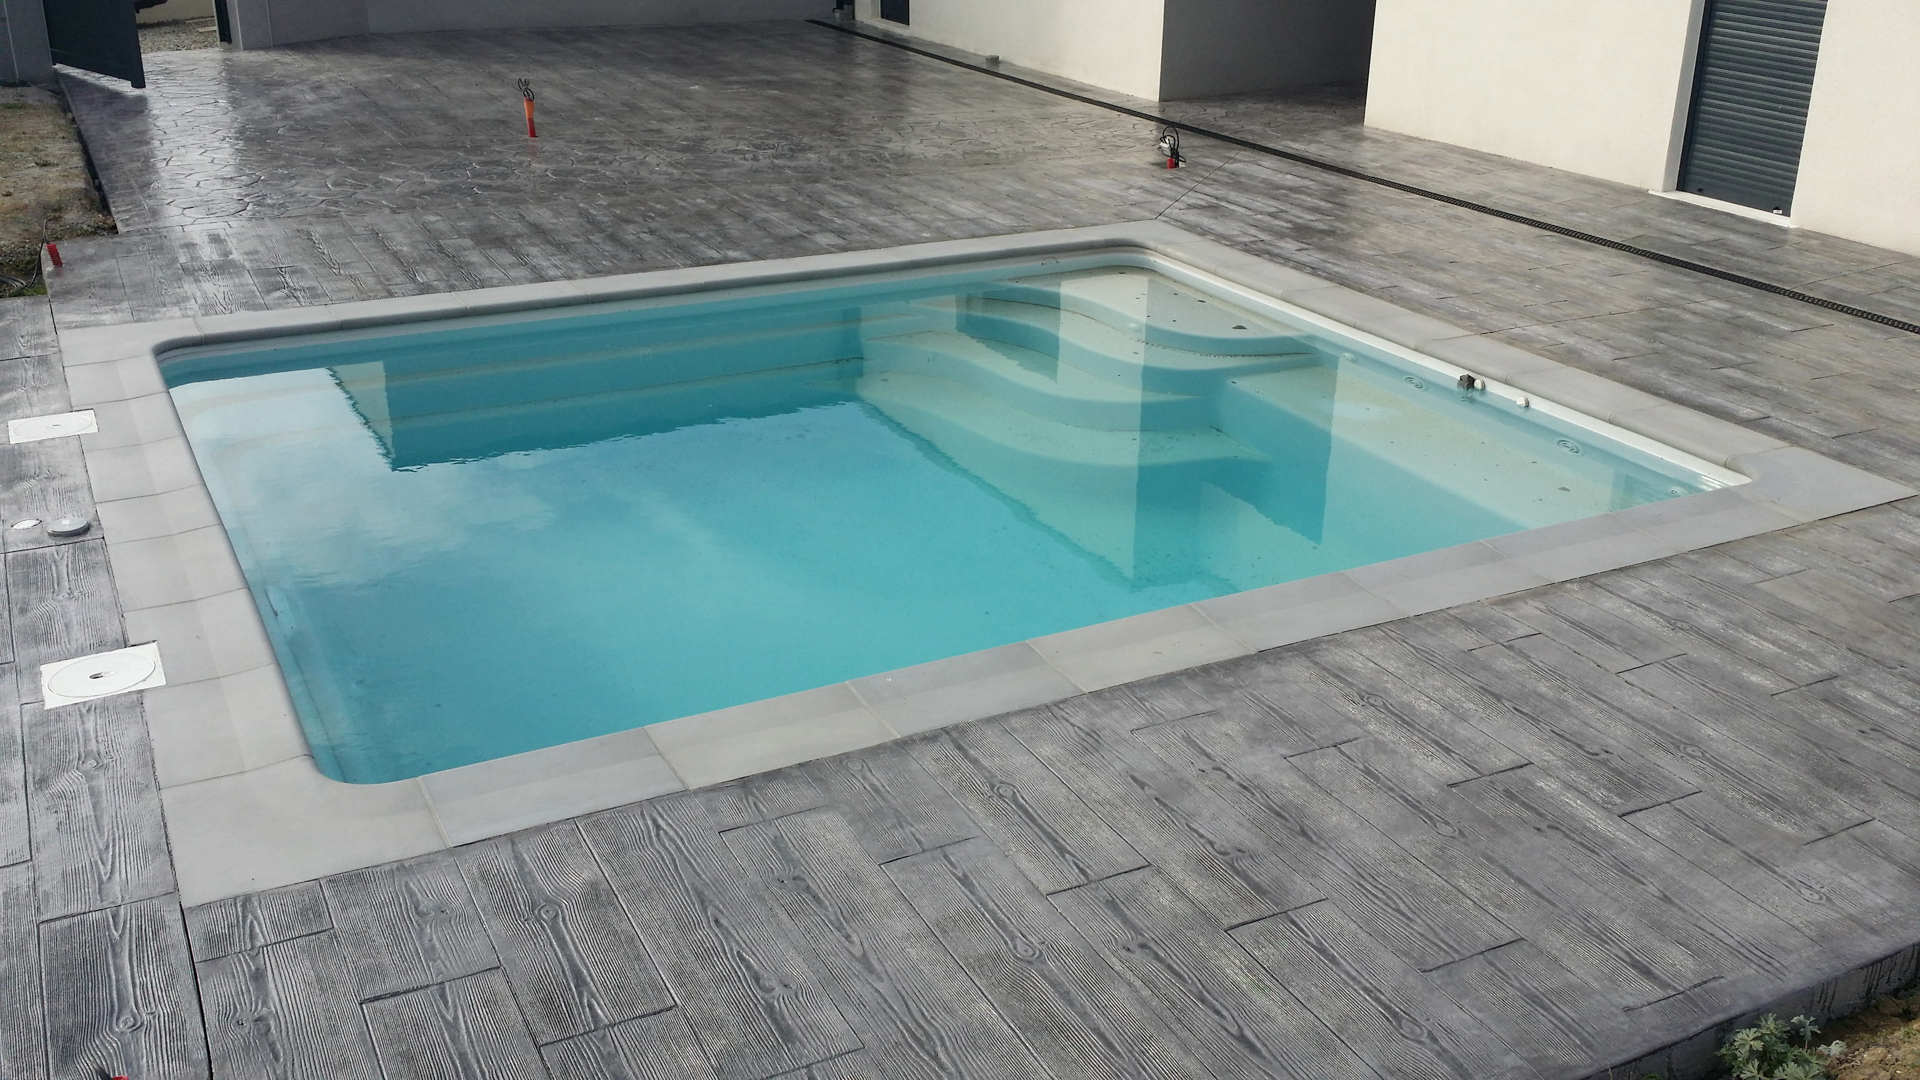 bazen z odtisnjenim betonom, ki posnema les